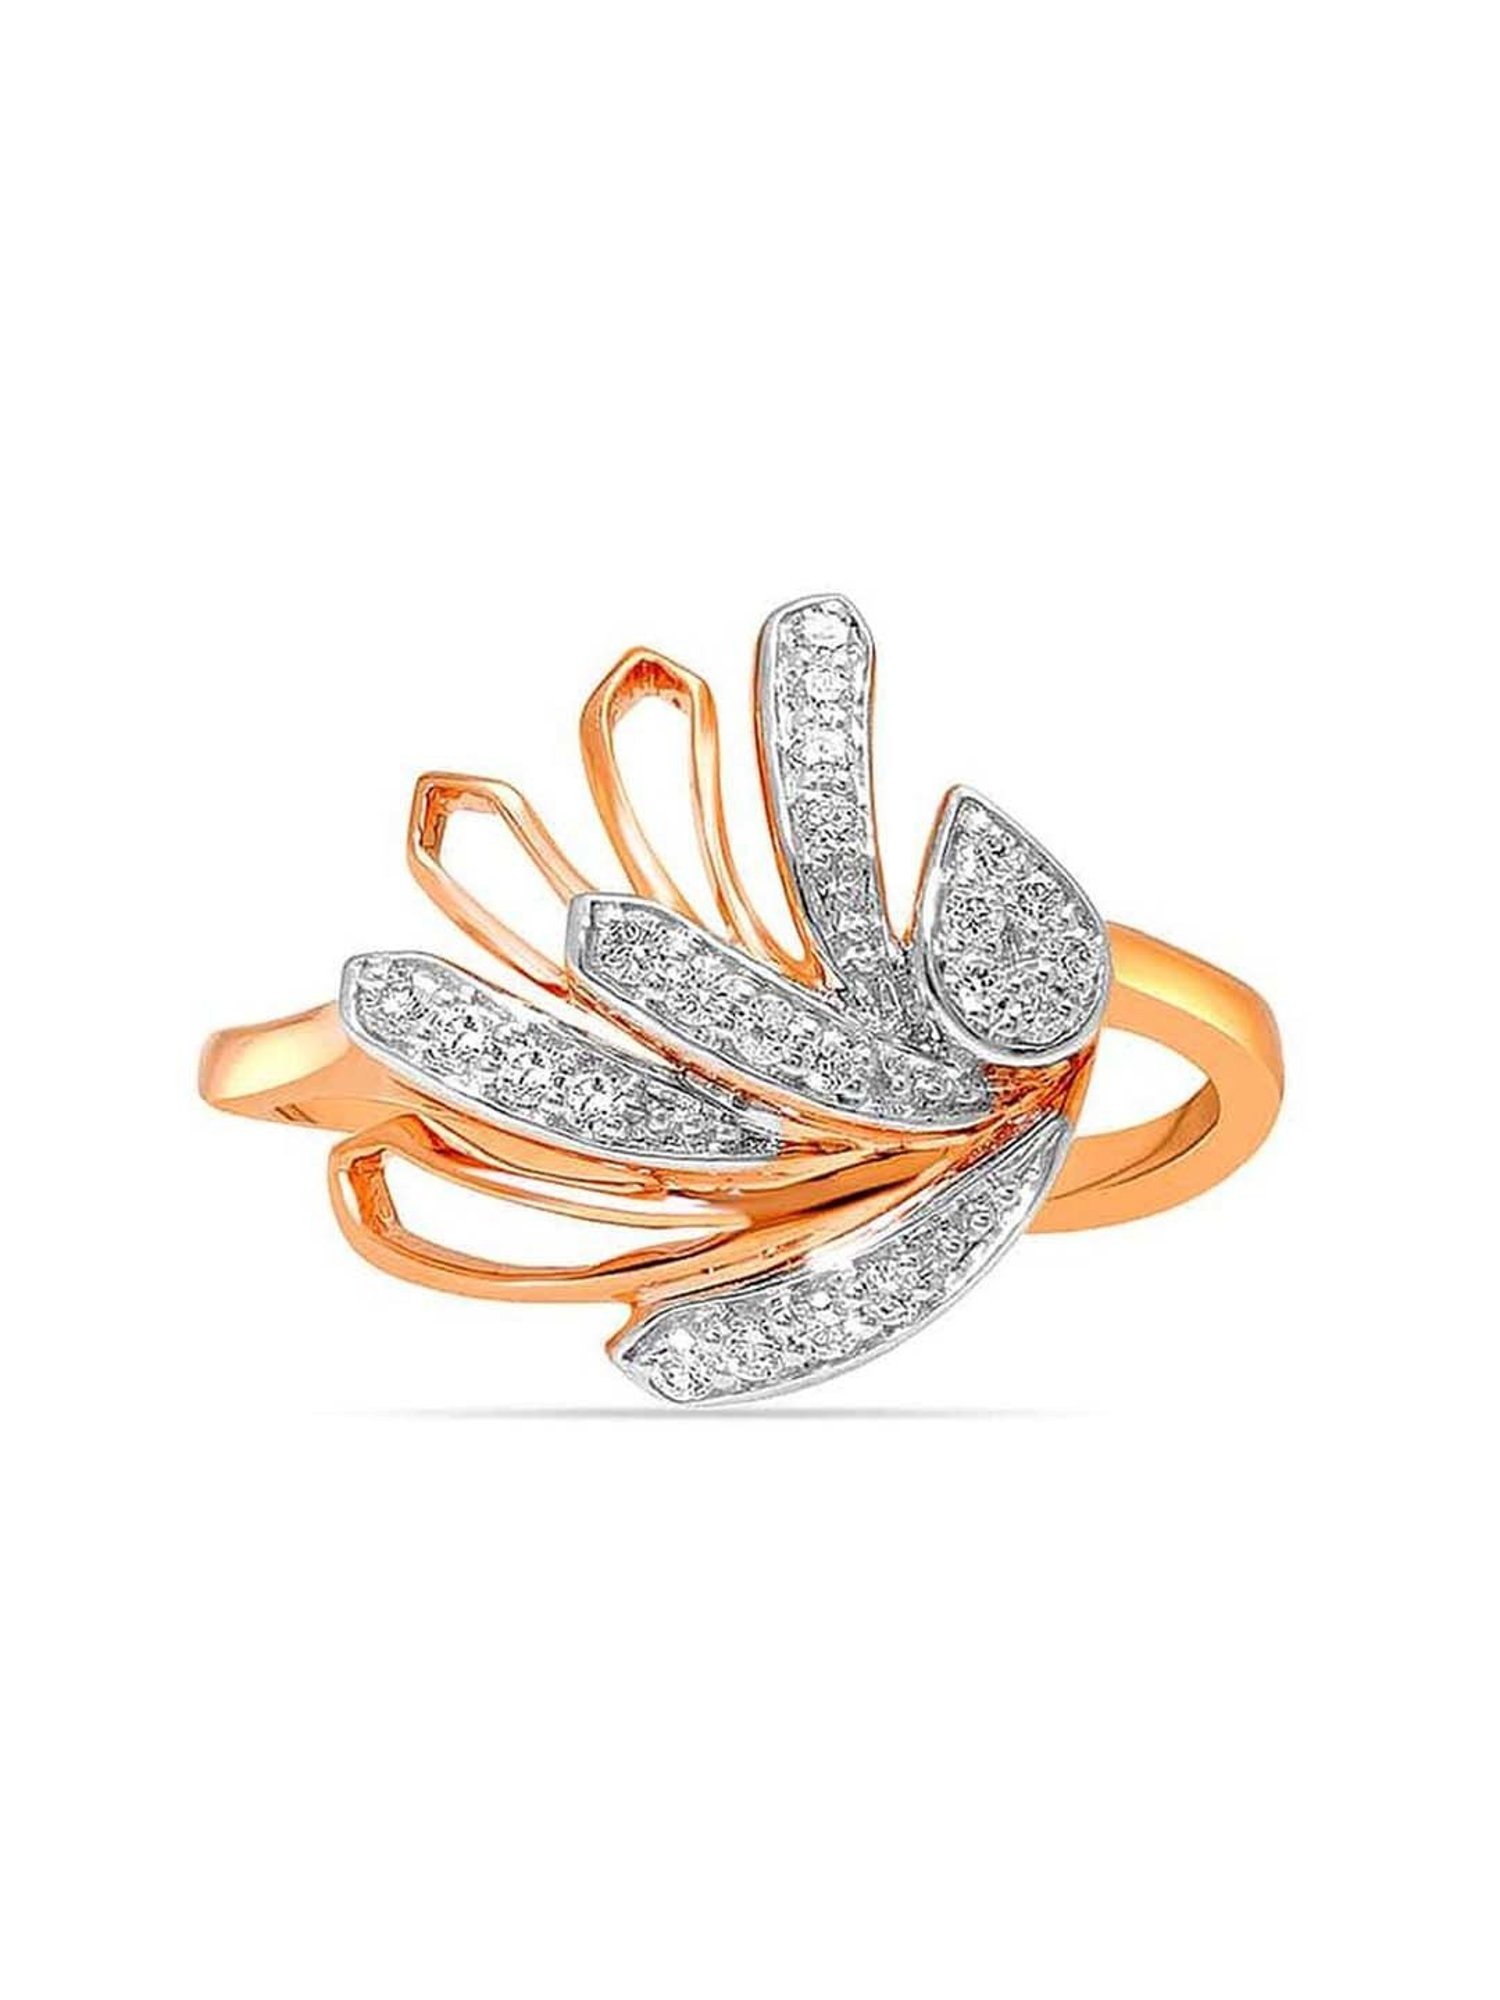 Stunning 18 Karat Rose Gold And Diamond Cocktail Ring